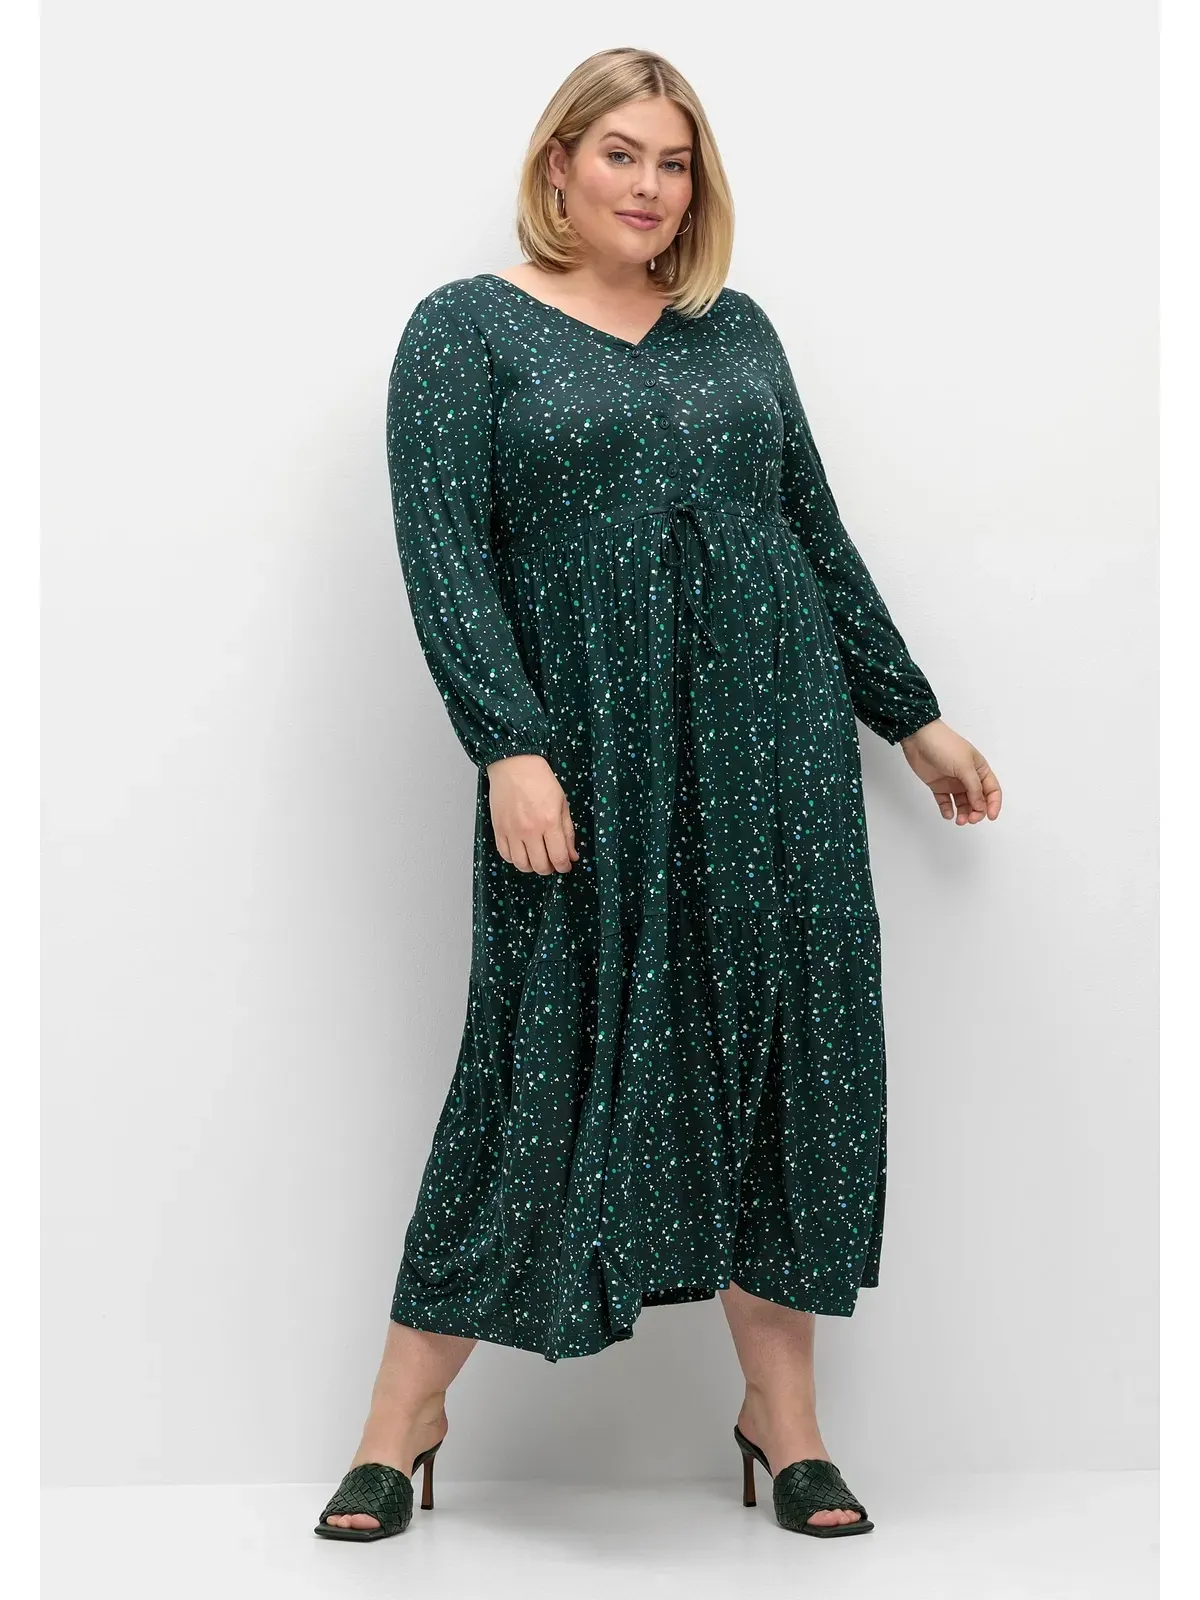 Jerseykleid SHEEGO "Große Größen" Gr. 54, Normalgrößen, grün (tiefgrün gemustert) Damen Kleider Freizeitkleider